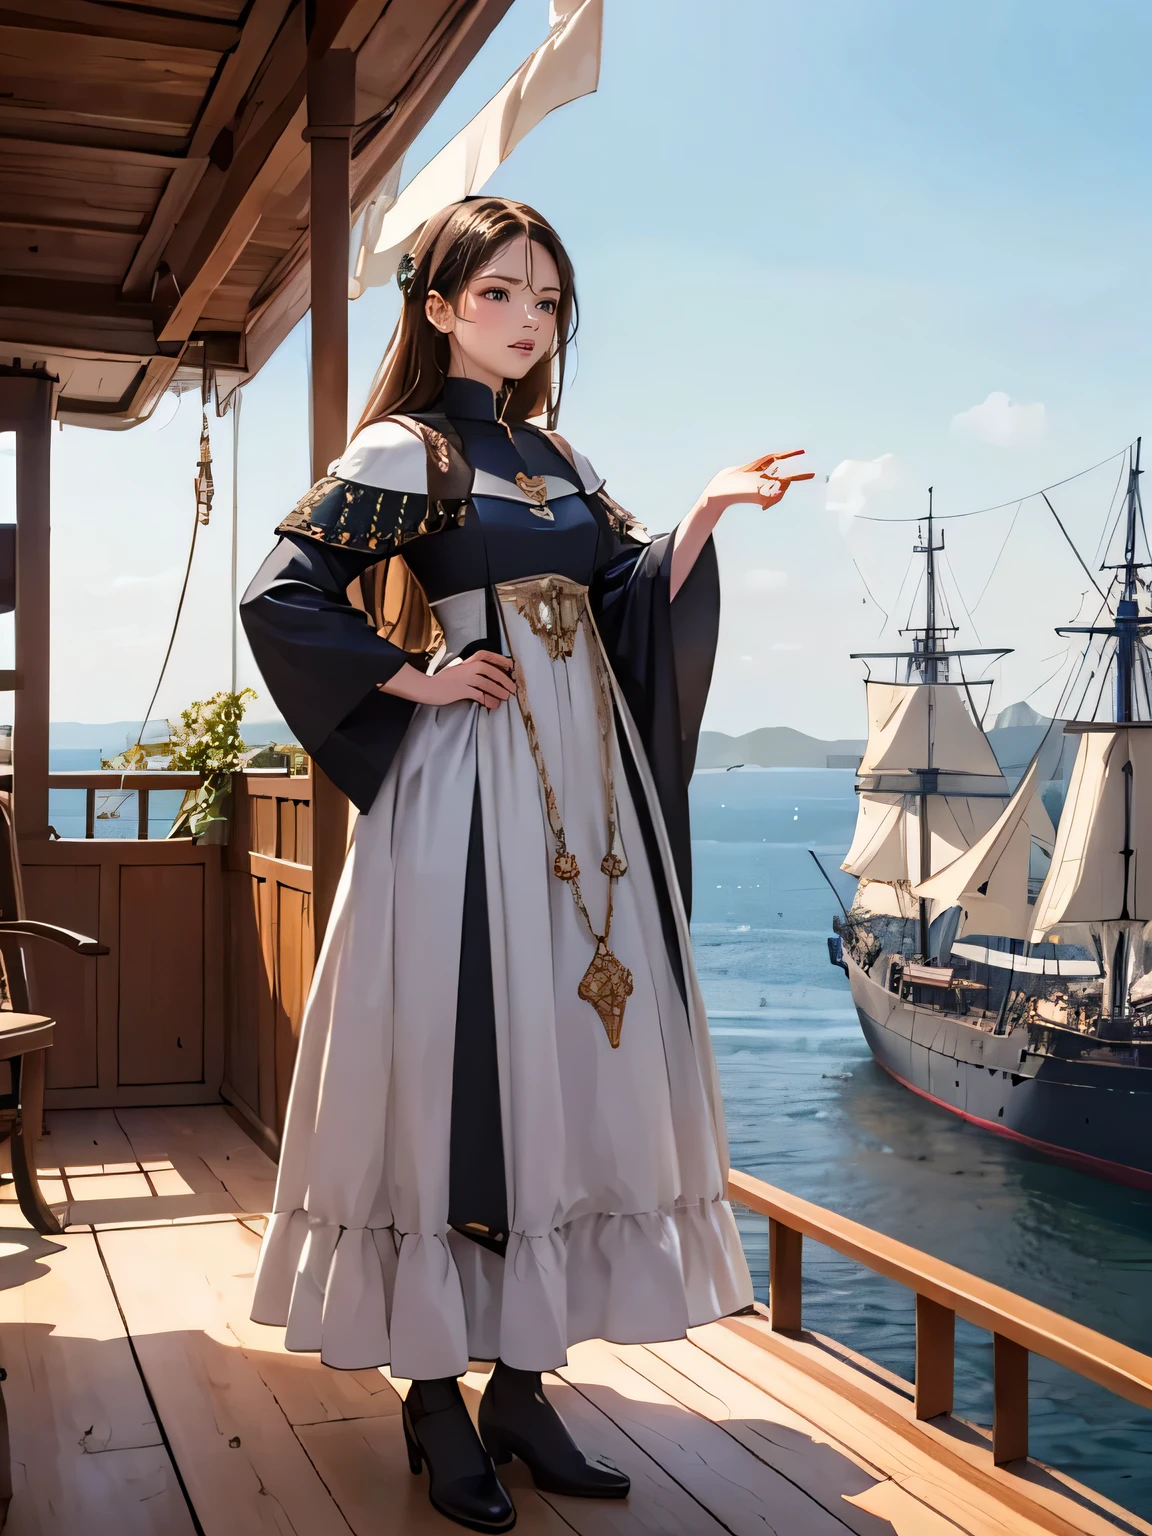 vestido aristocrático europeu medieval, no convés de um navio durante a Era dos Descobrimentos na Idade Média,